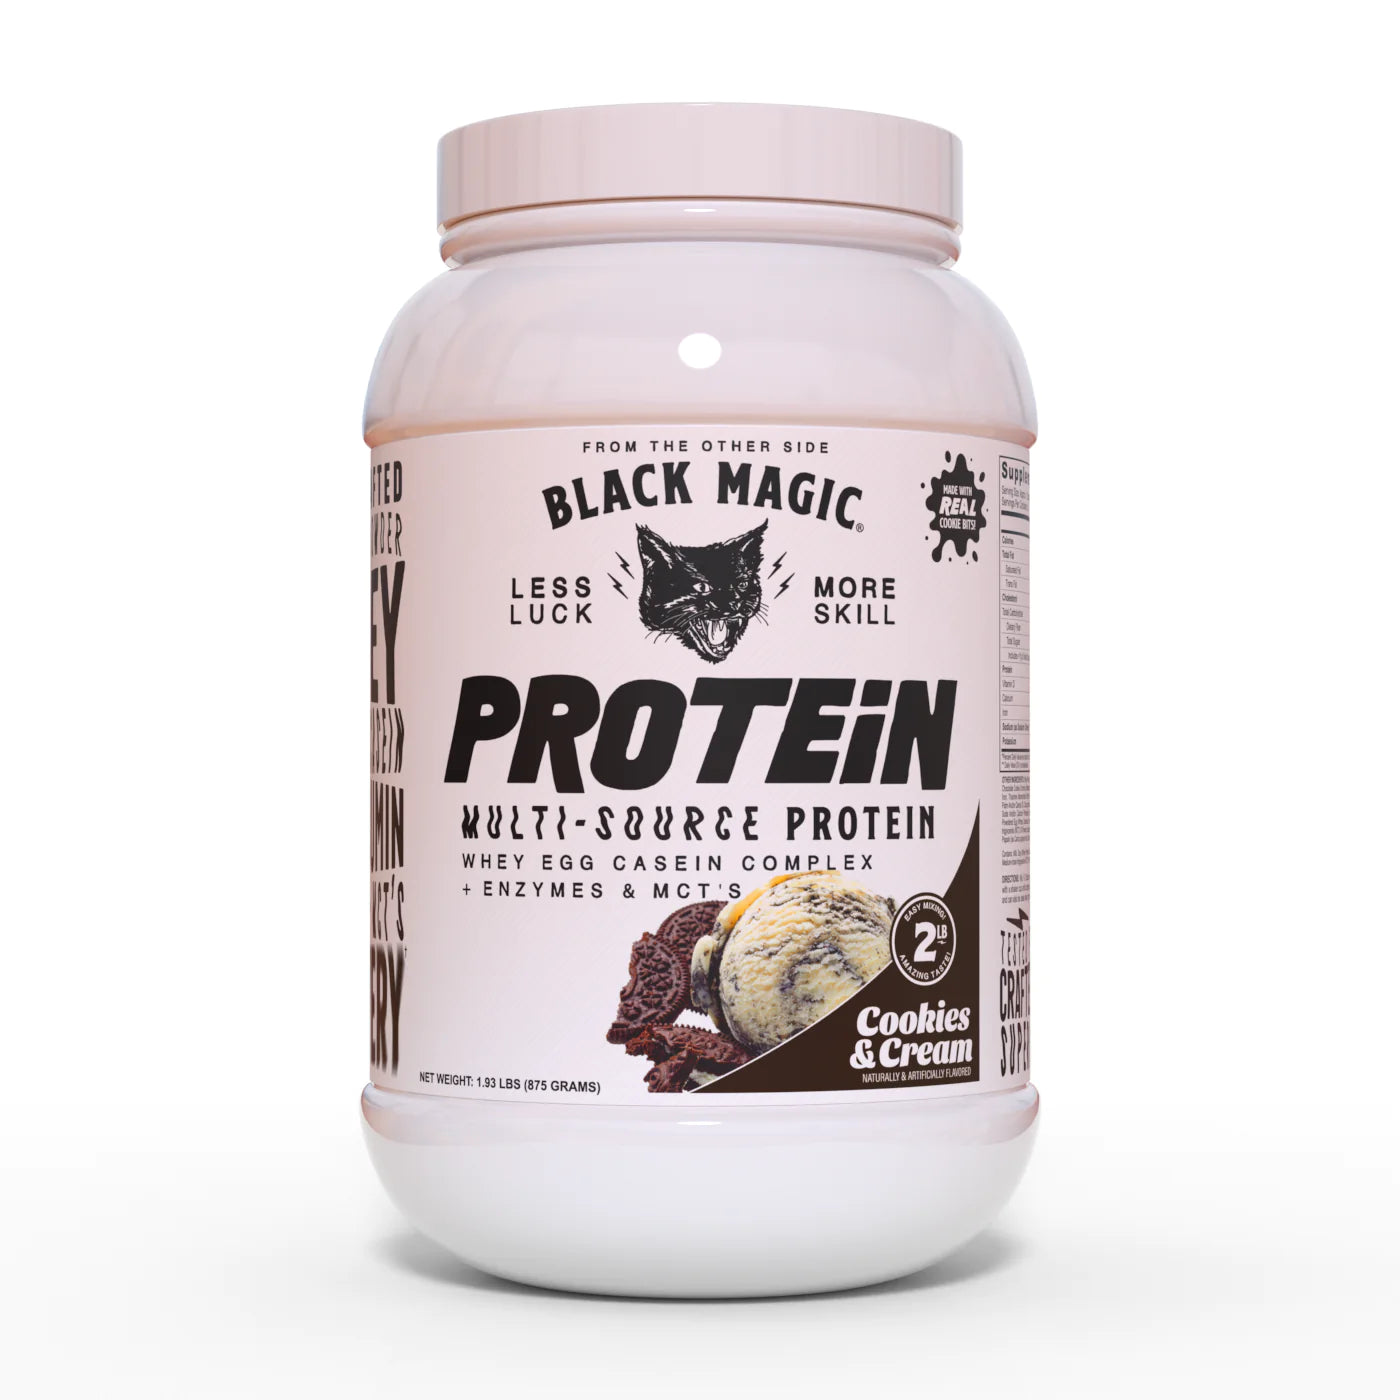 Black Magic - Protein